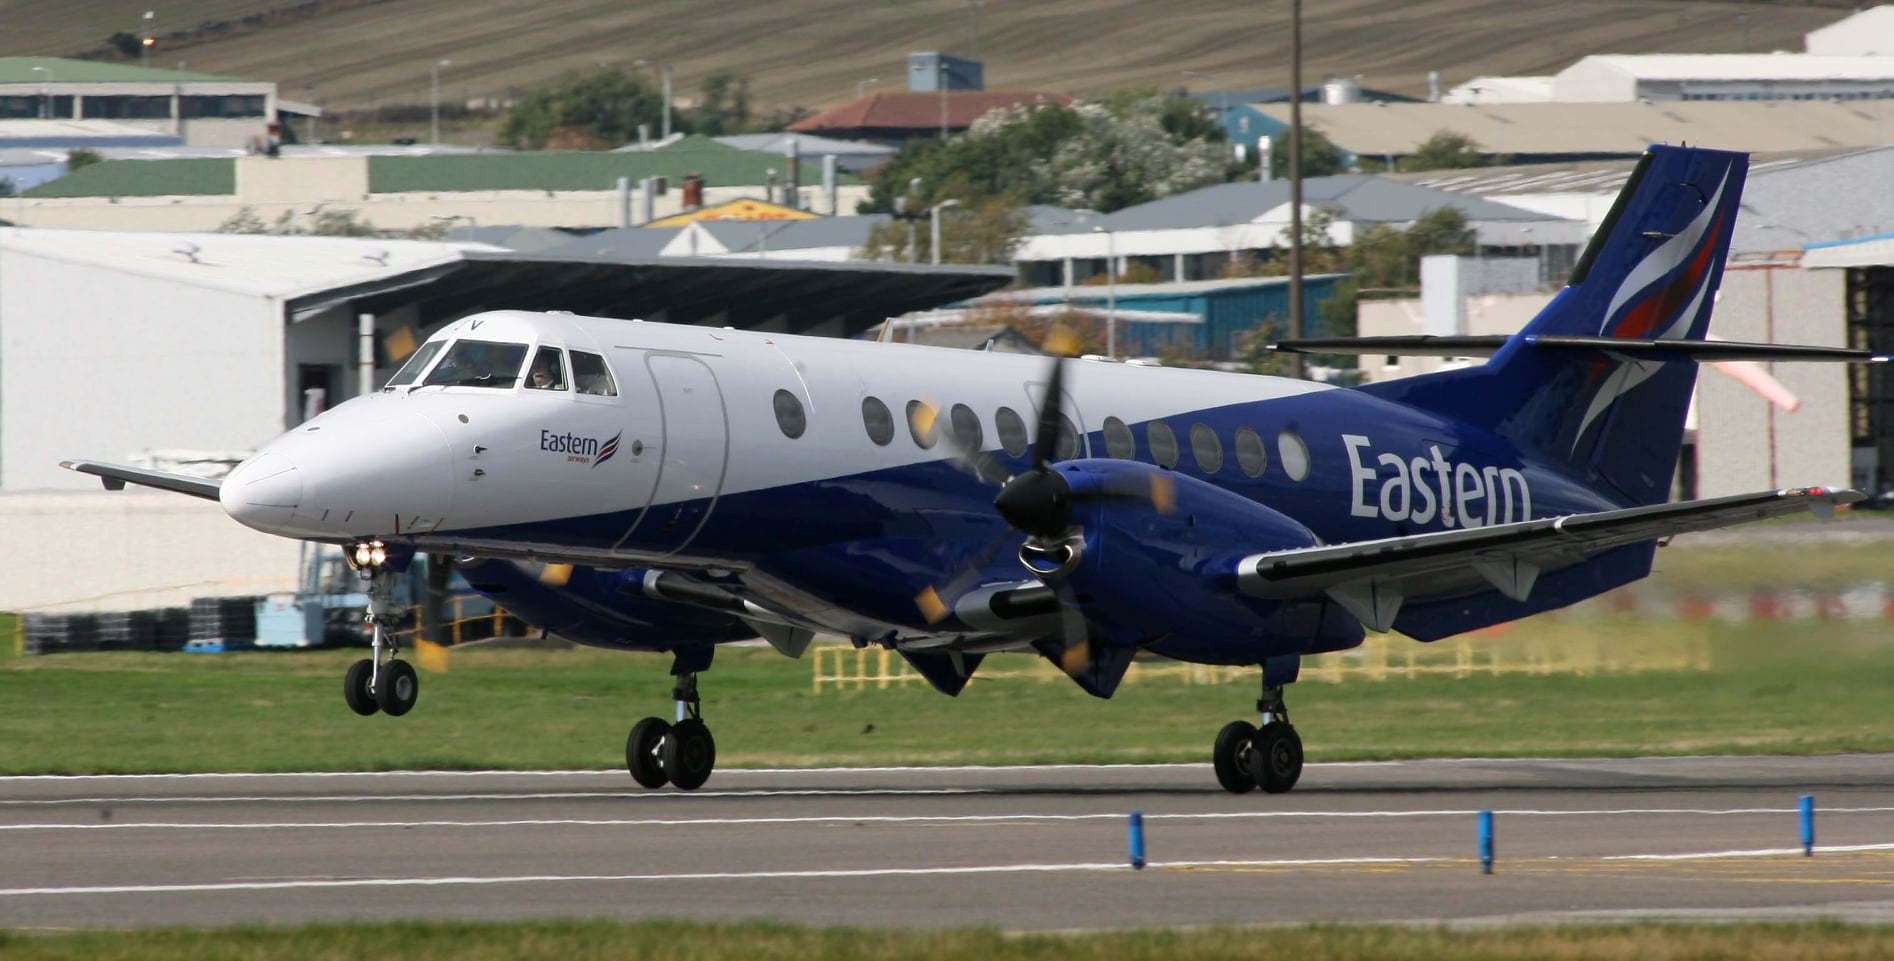 Eastern Airways has resumed flights from Aberdeen to Newcastle